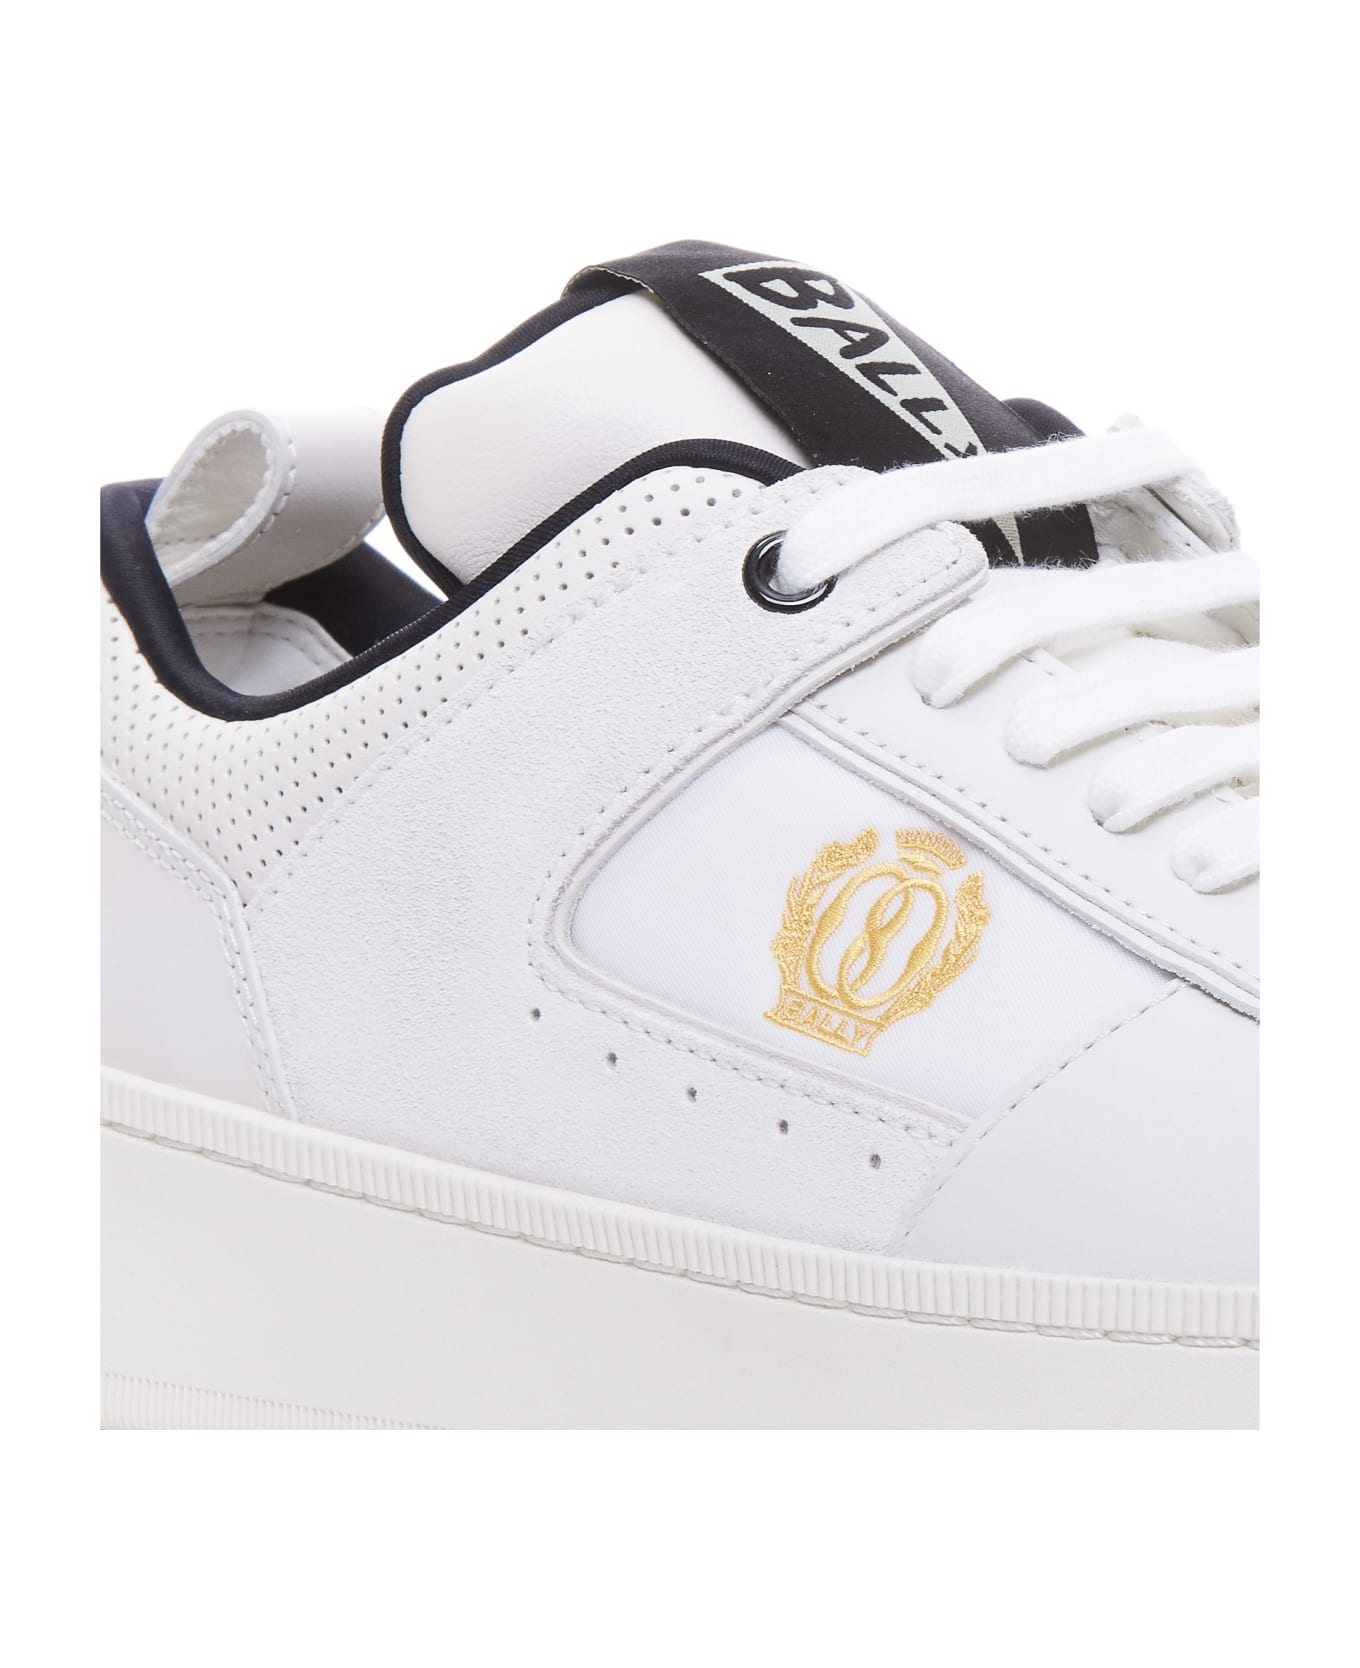 Bally Raise Sneakers - White